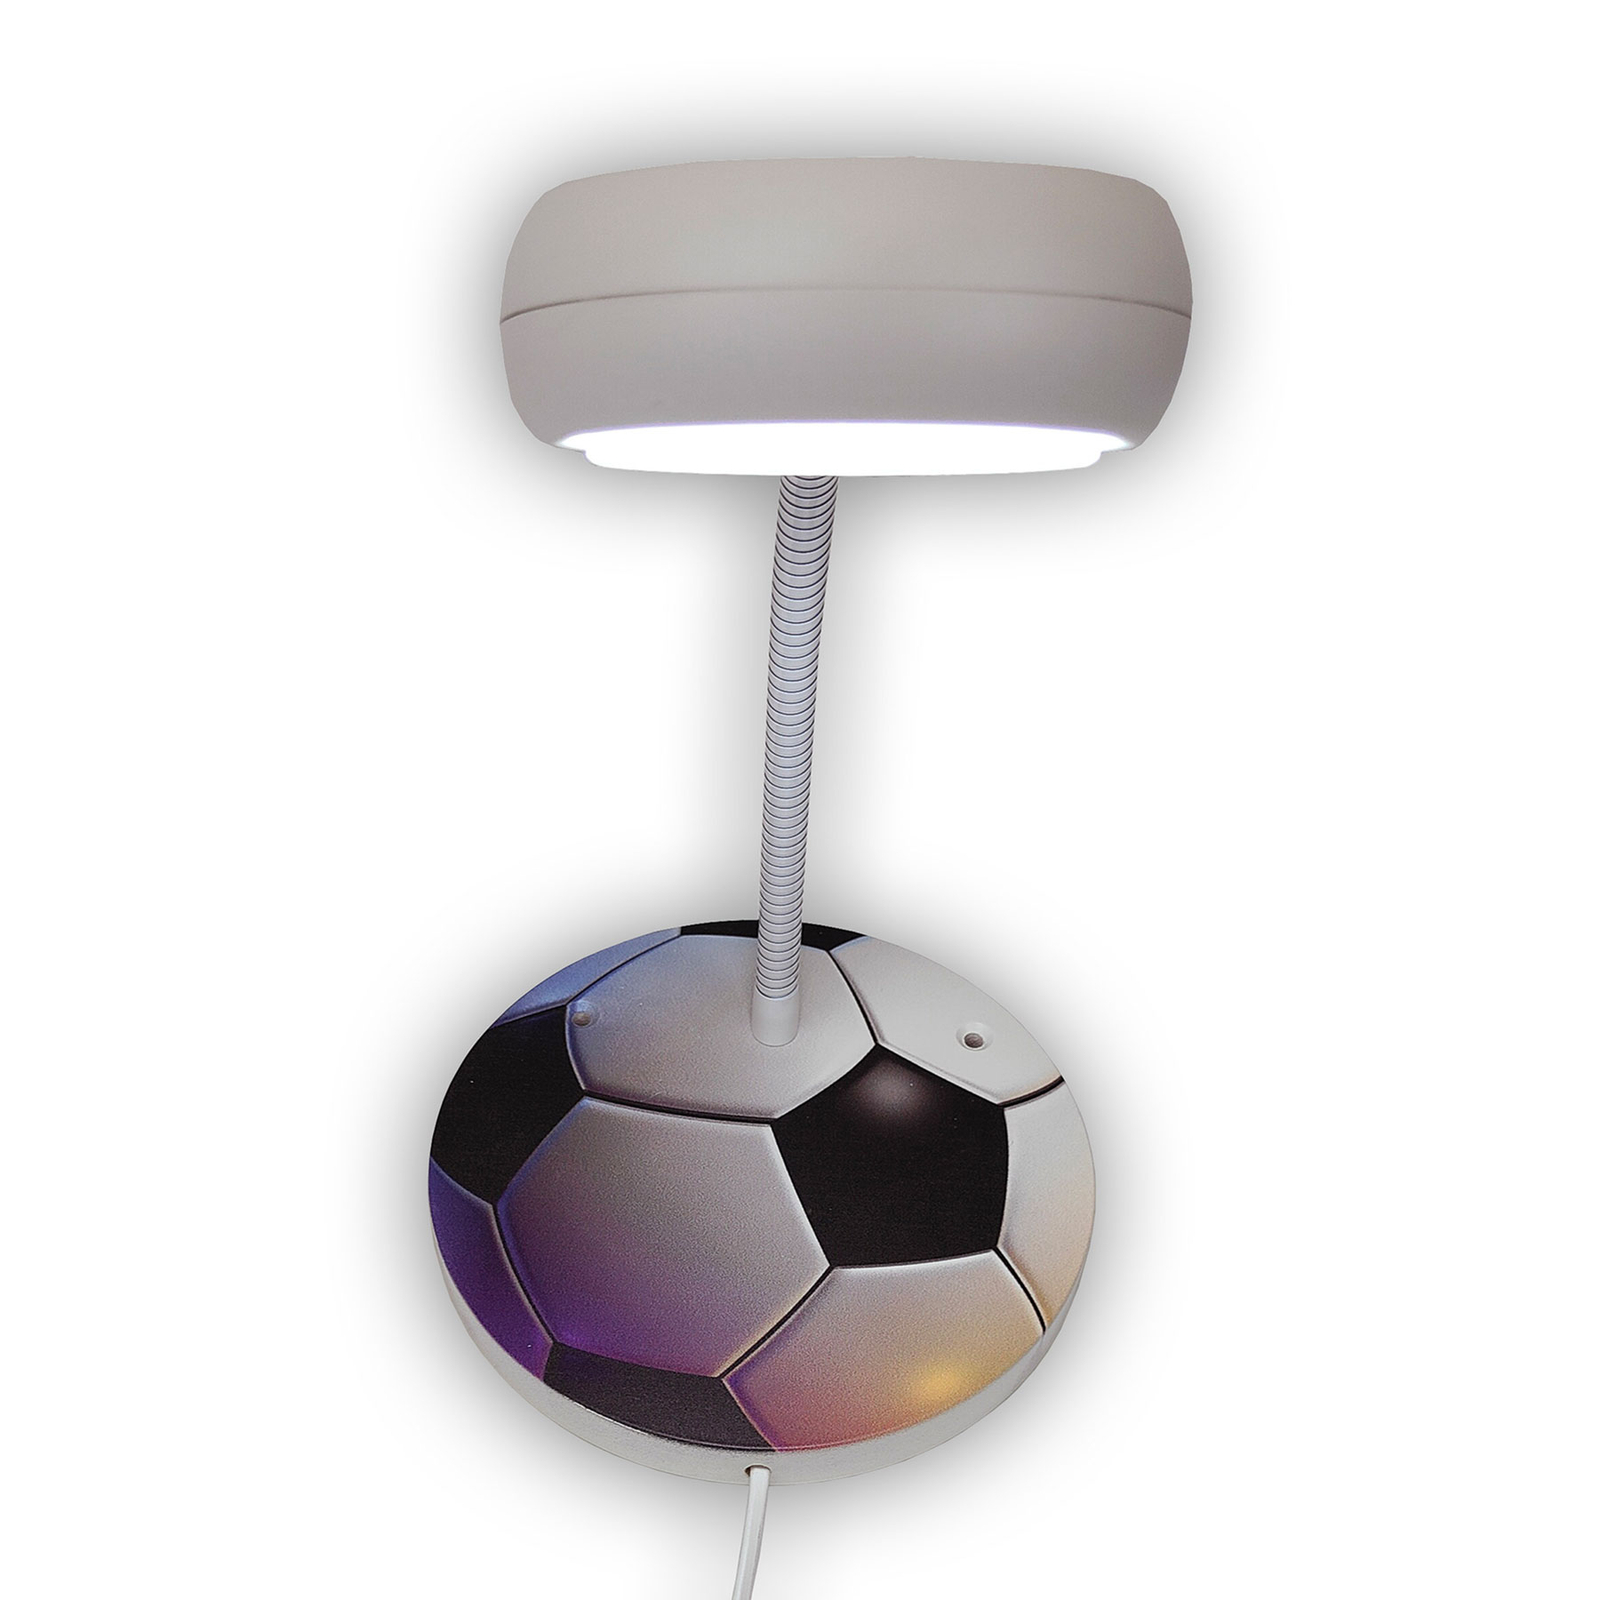 Vägglampa Fotboll med flexarm och kontaktkabel